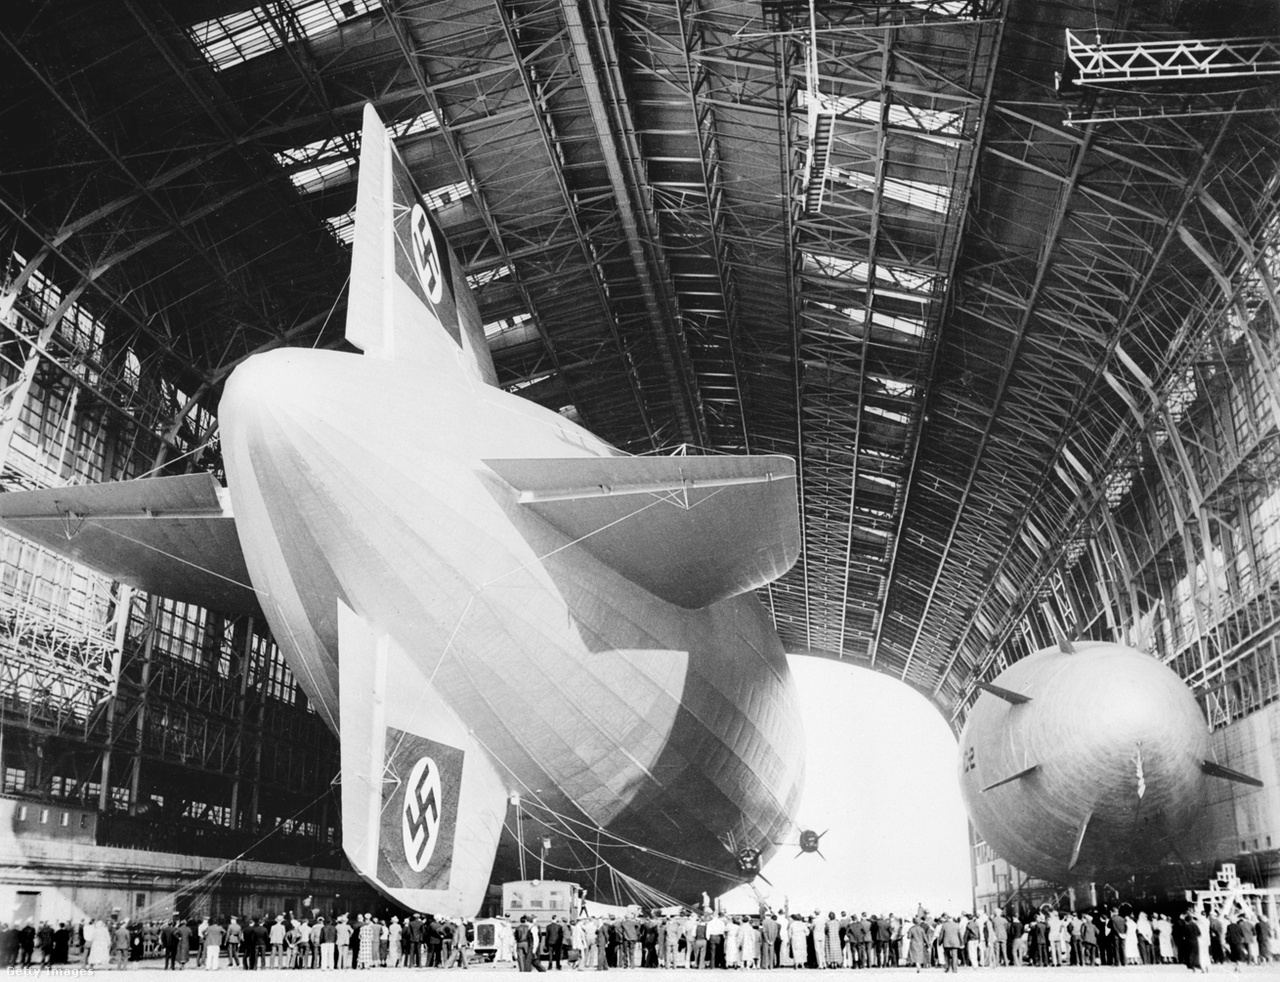 Kétségkívül impozáns látványt nyújtott a Hindenburg a hatalmas hangár acélszerkezetétől ölelve.